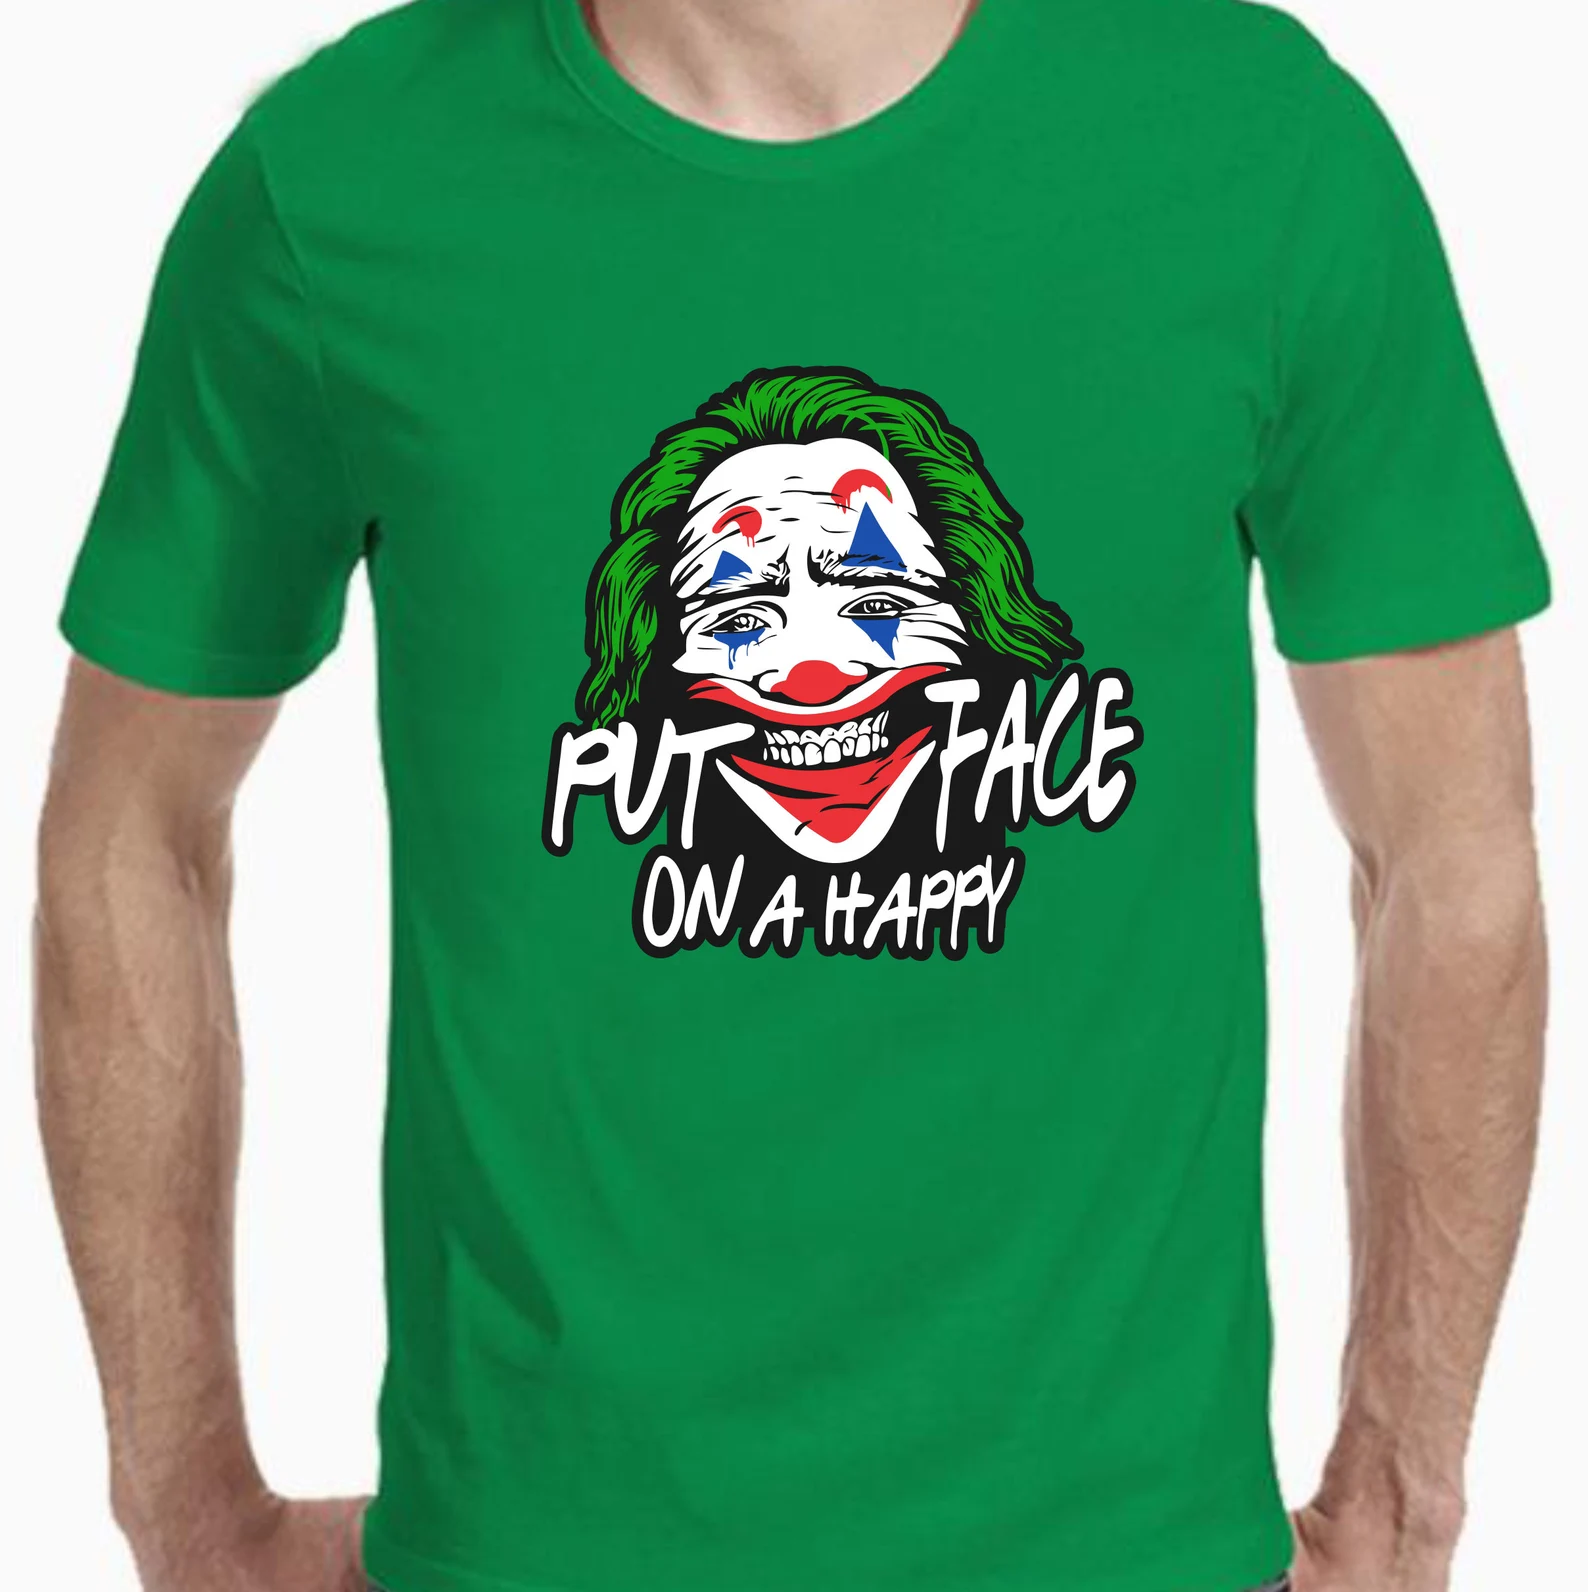 Classic green t-shirt with Joker face.